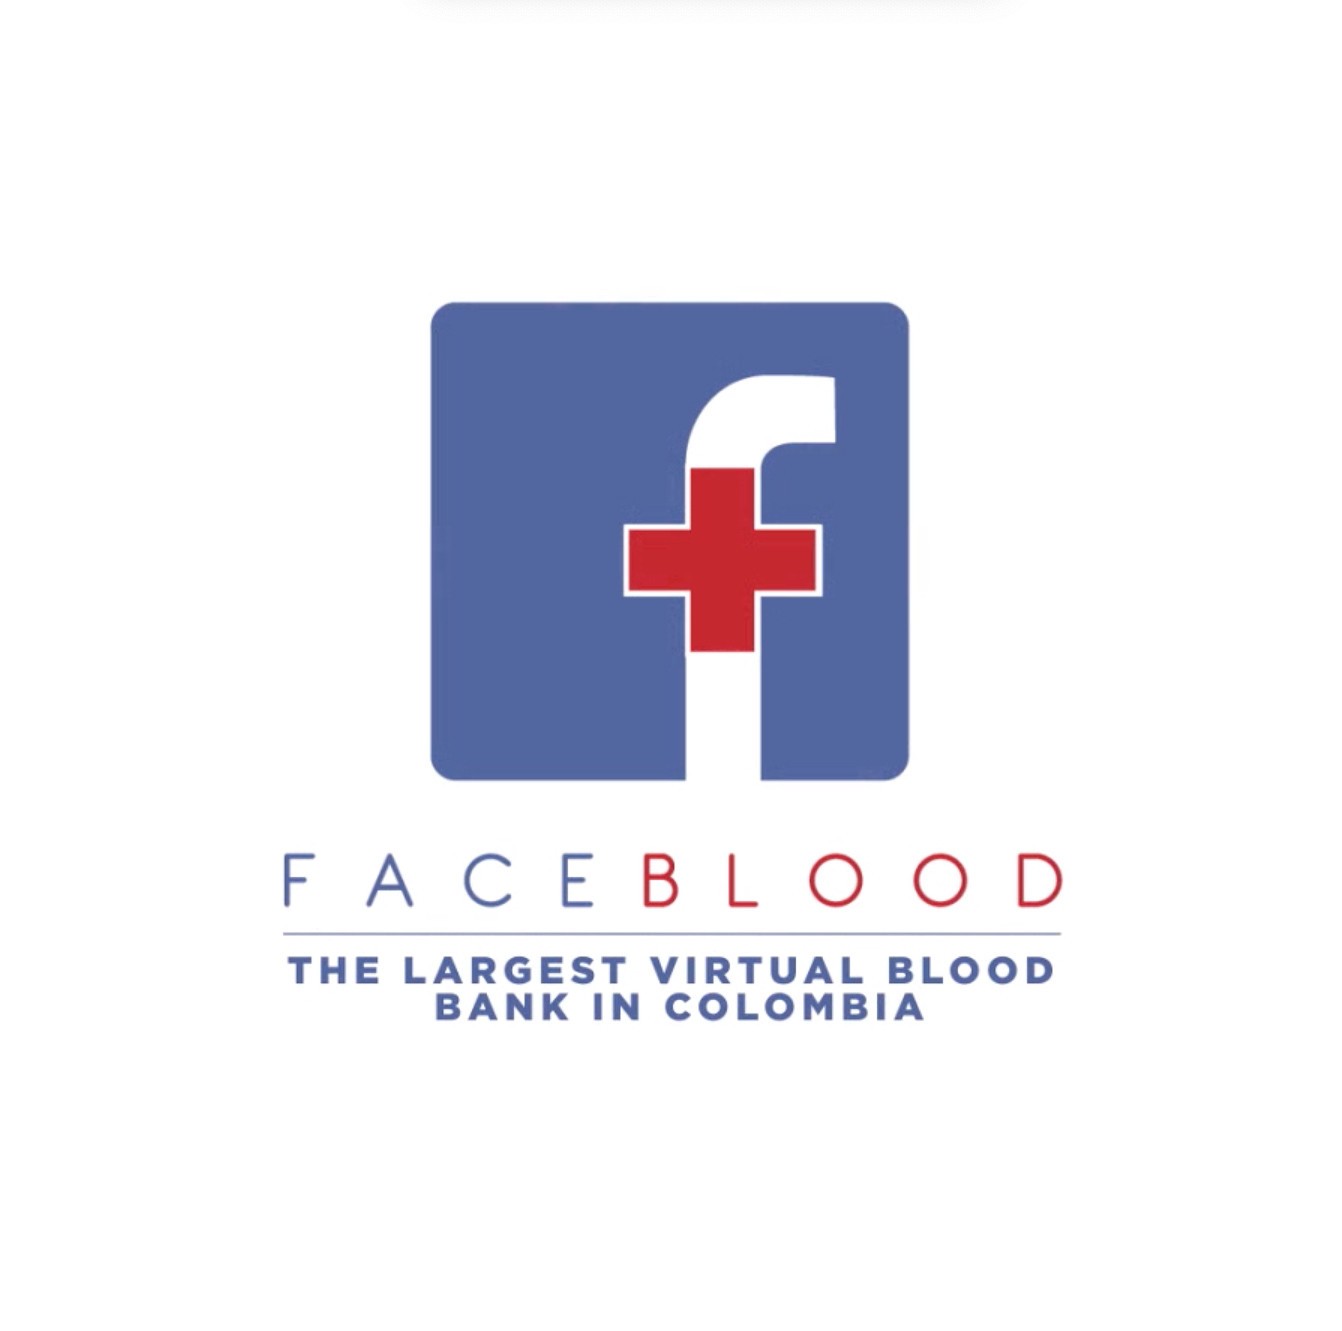 Cruz Roja Faceblood